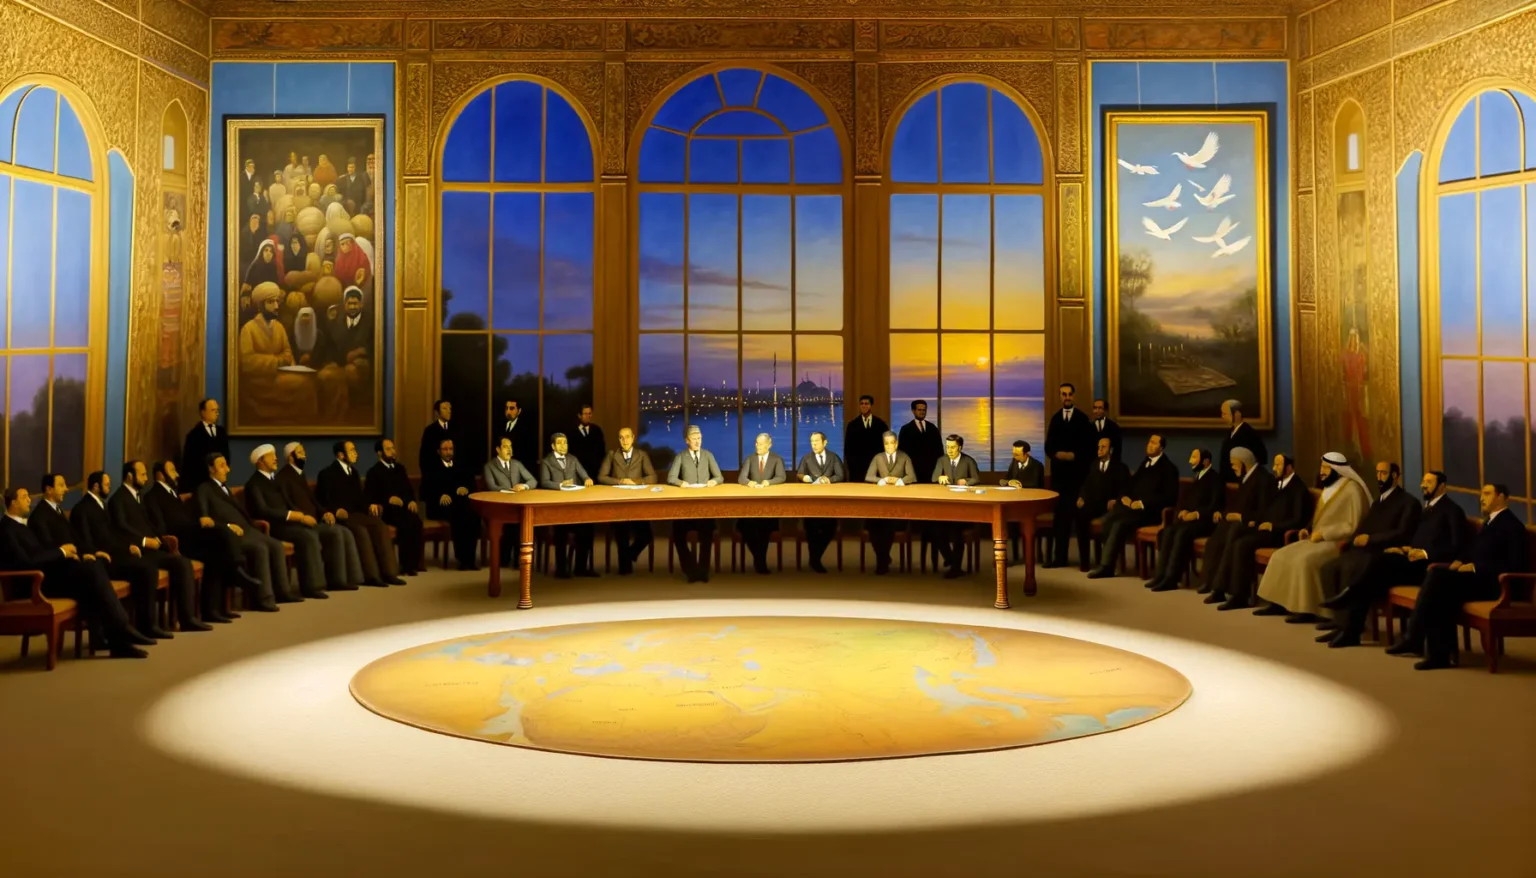 Ein Gemälde, das eine Vielzahl internationaler Führungspersönlichkeiten um einen ovalen Tisch sitzend in einem eleganten Saal zeigt. Im Zentrum des Tisches liegt eine große, beleuchtete Weltkarte. Der Raum verfügt über große Fenster, die einen Blick auf eine Meereslandschaft bei Sonnenuntergang freigeben. An den Wänden hängen zwei große Portraits und die Einrichtung ist reich verziert. Die Atmosphäre des Bildes wirkt feierlich und bedeutend.